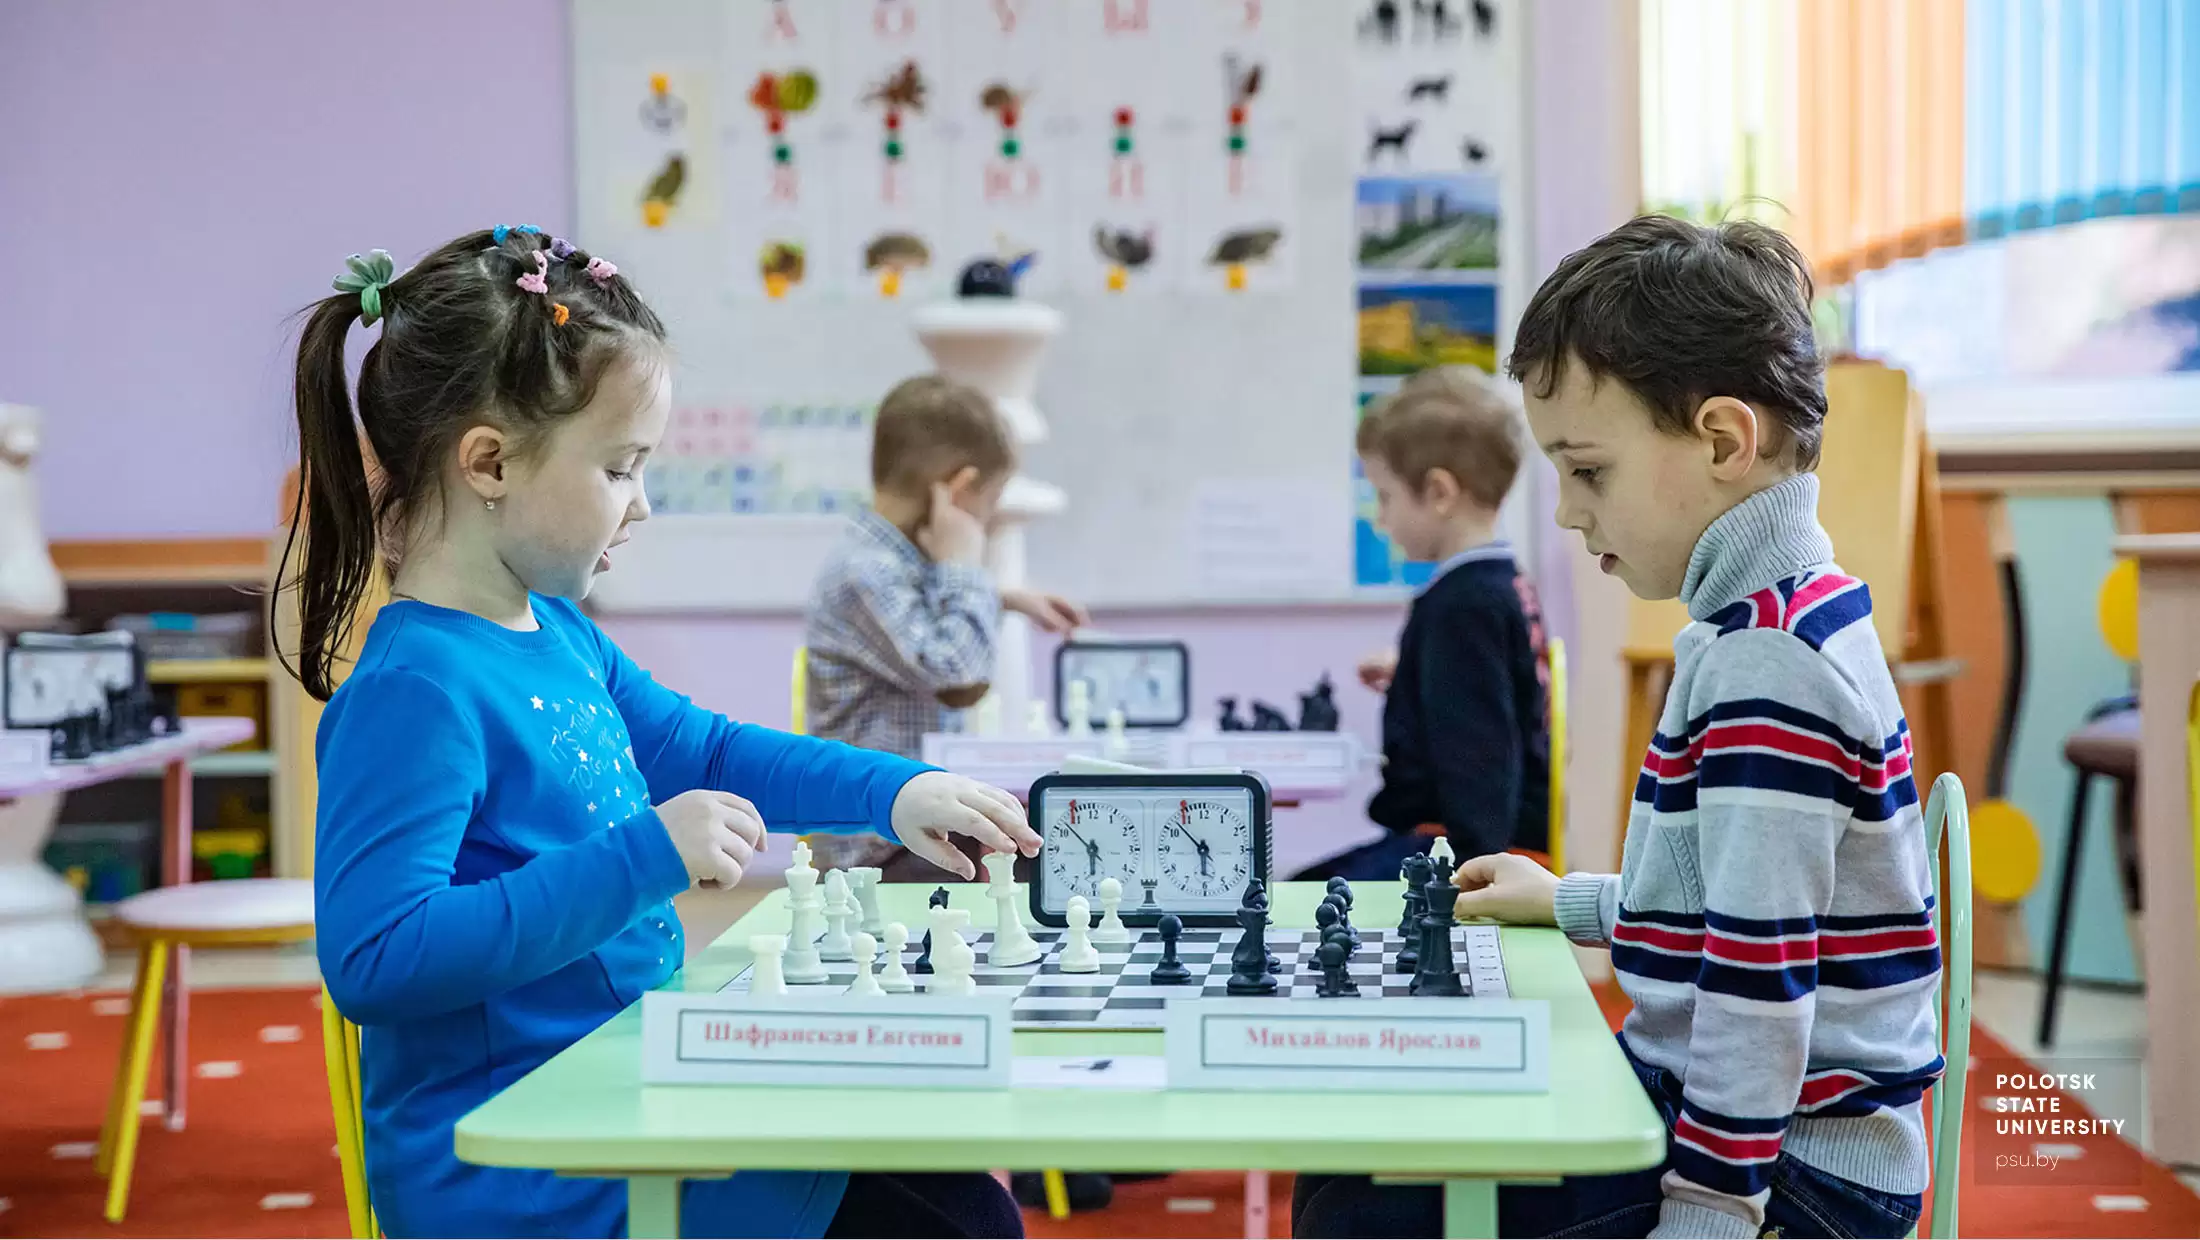 Шахматная партия между Шафранской Евгенией и Михайловым Ярославом